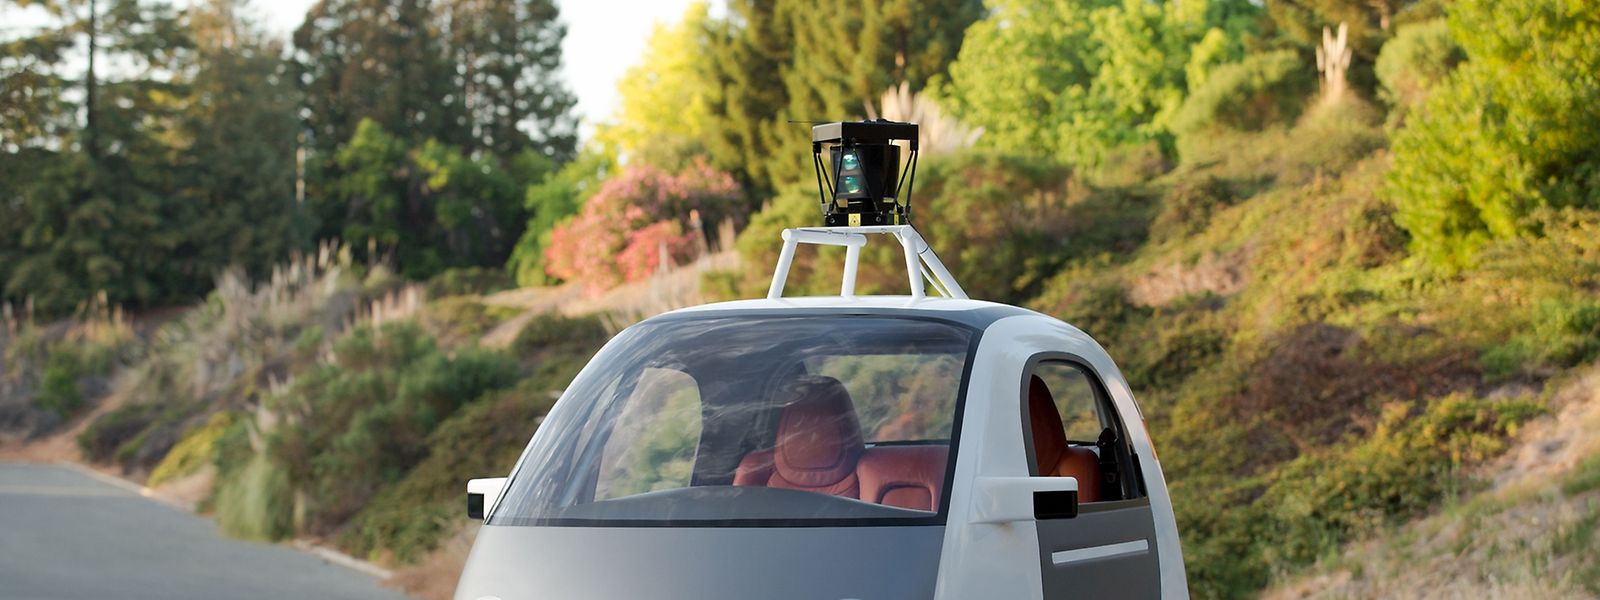 La Google car circulera sur les routes californiennes pendant l'été 2015.